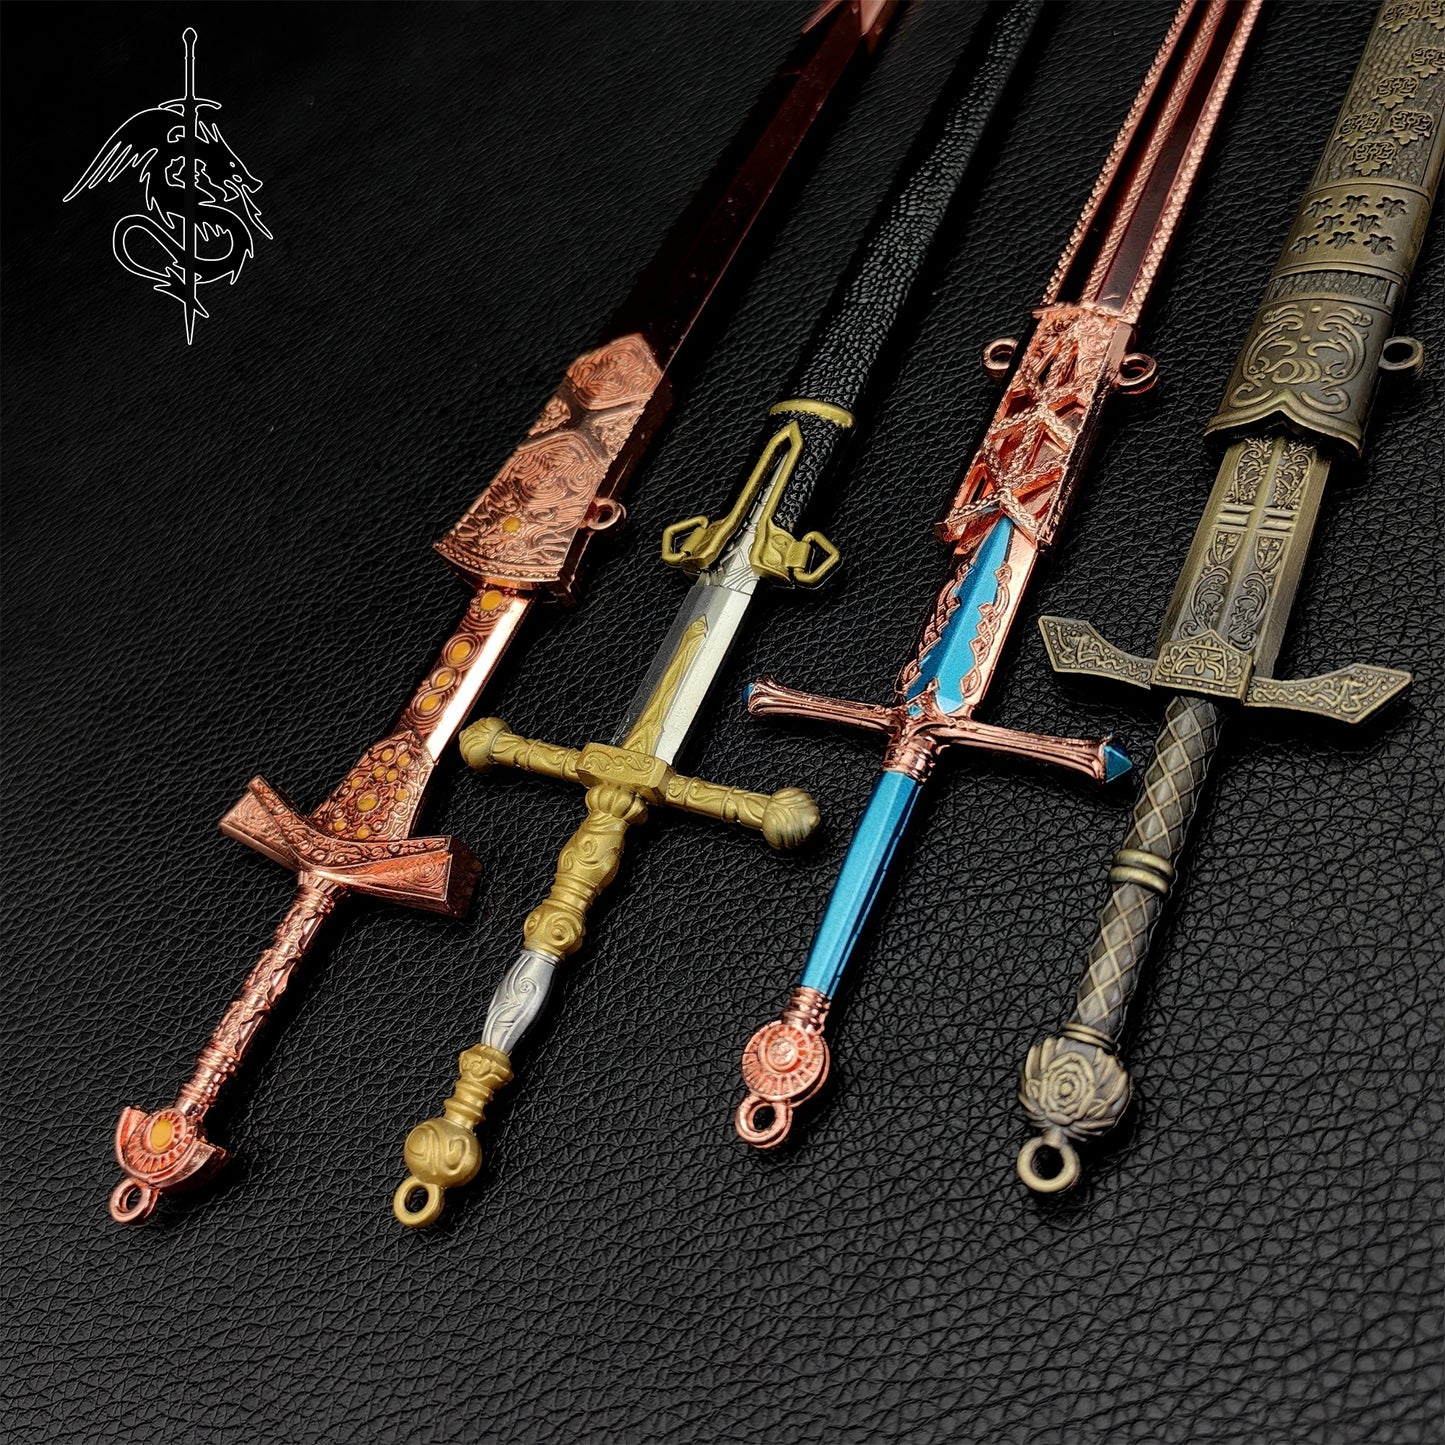 Hot Game Elden Ring Metal Swords 4 In 1 Gift Box